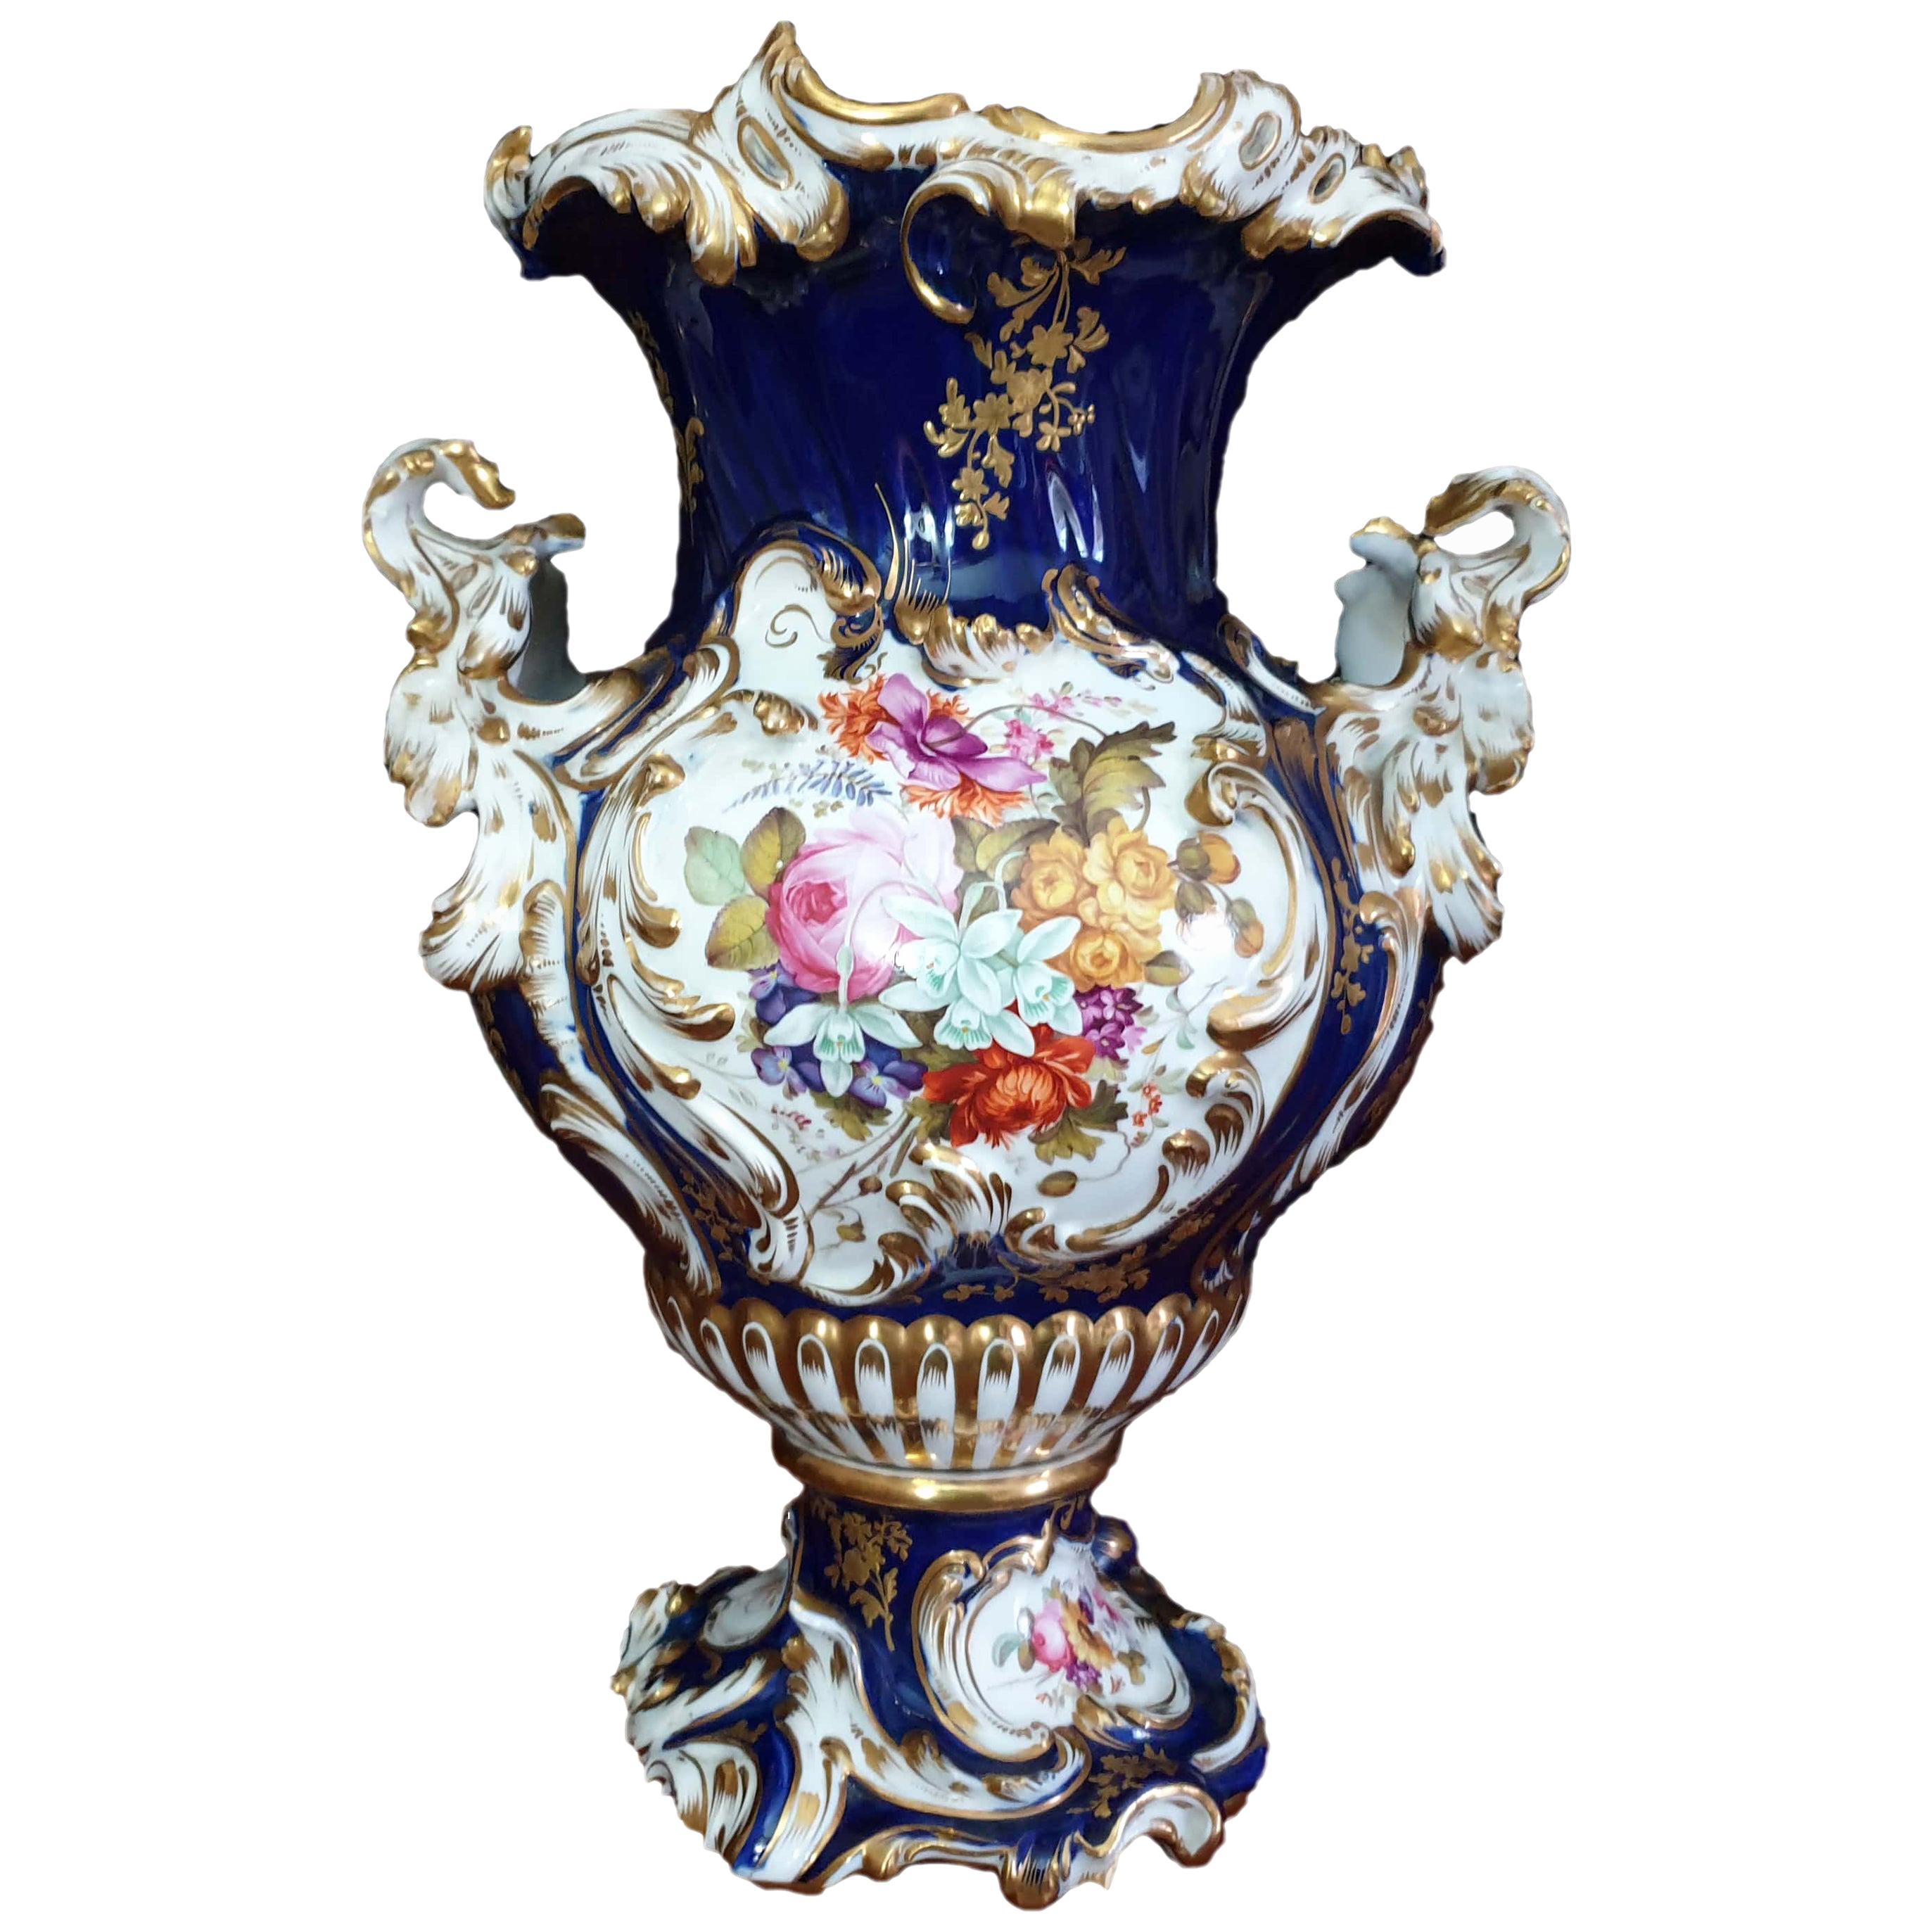 Coalport Cobalt Blue Hand Painted Exhibition Centre Piece Vase 19th Century